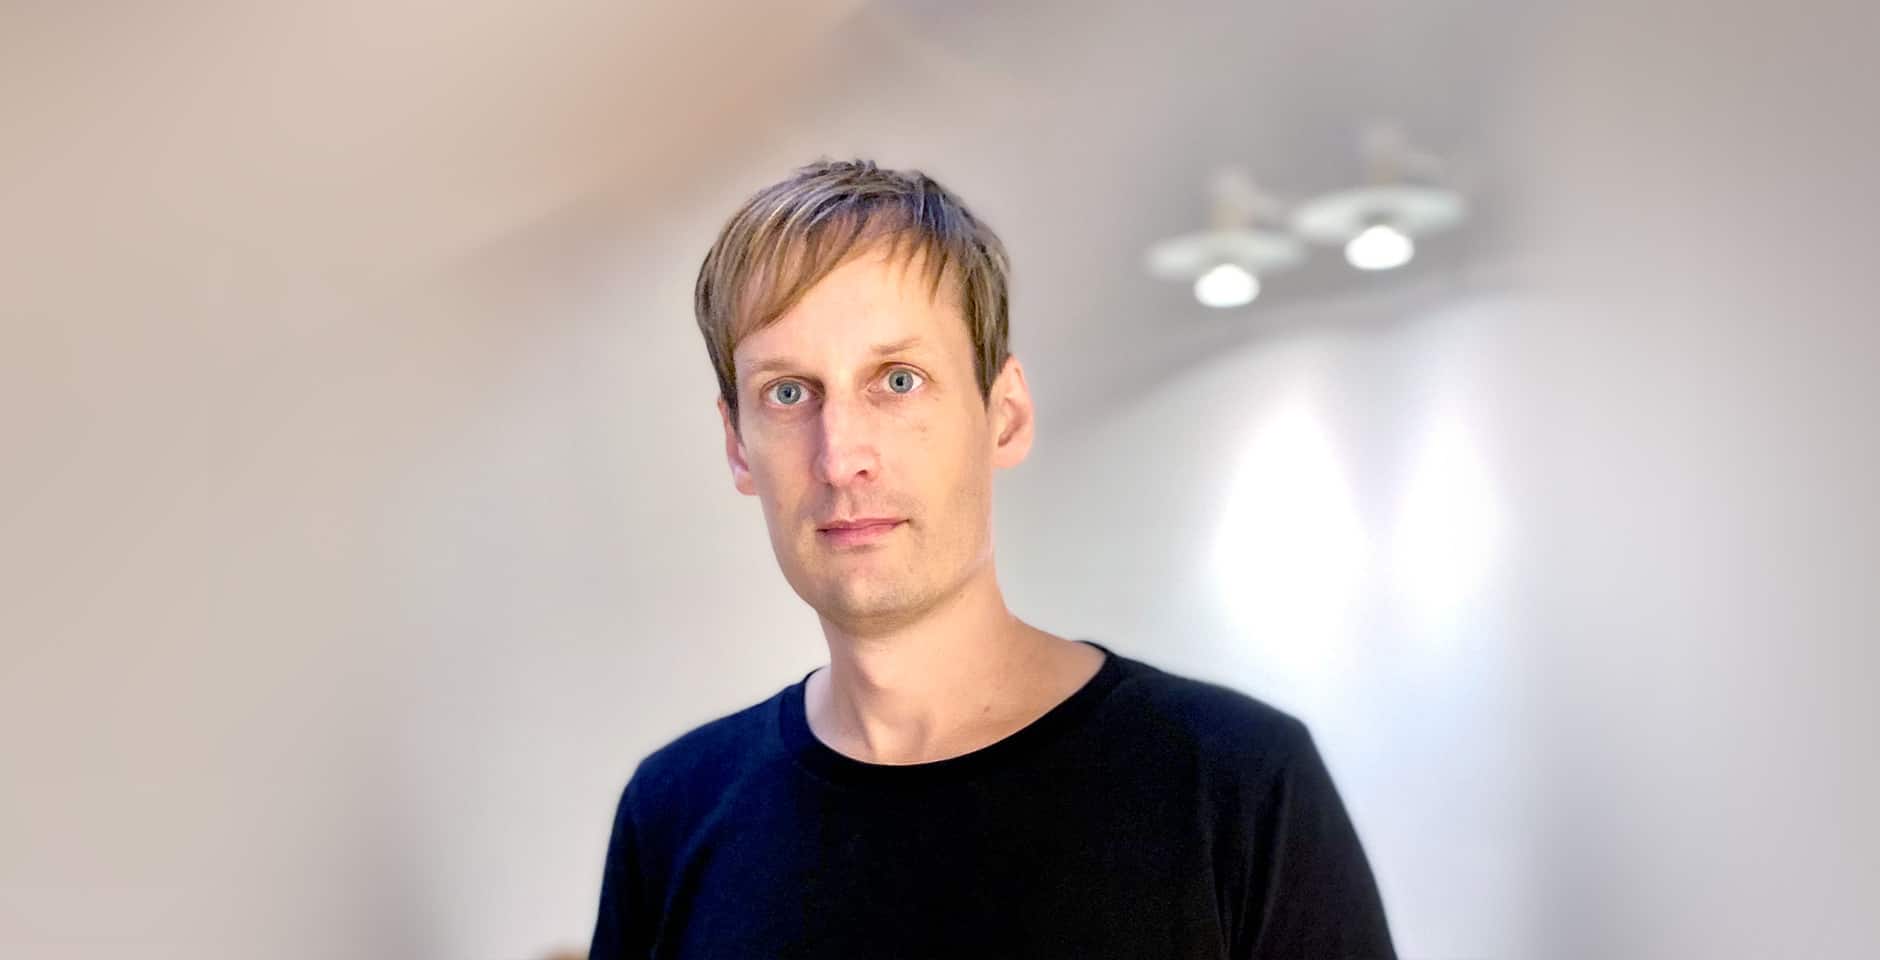 Alexander Pietras är docent vid Lunds universitet och forskar om hjärntumörer